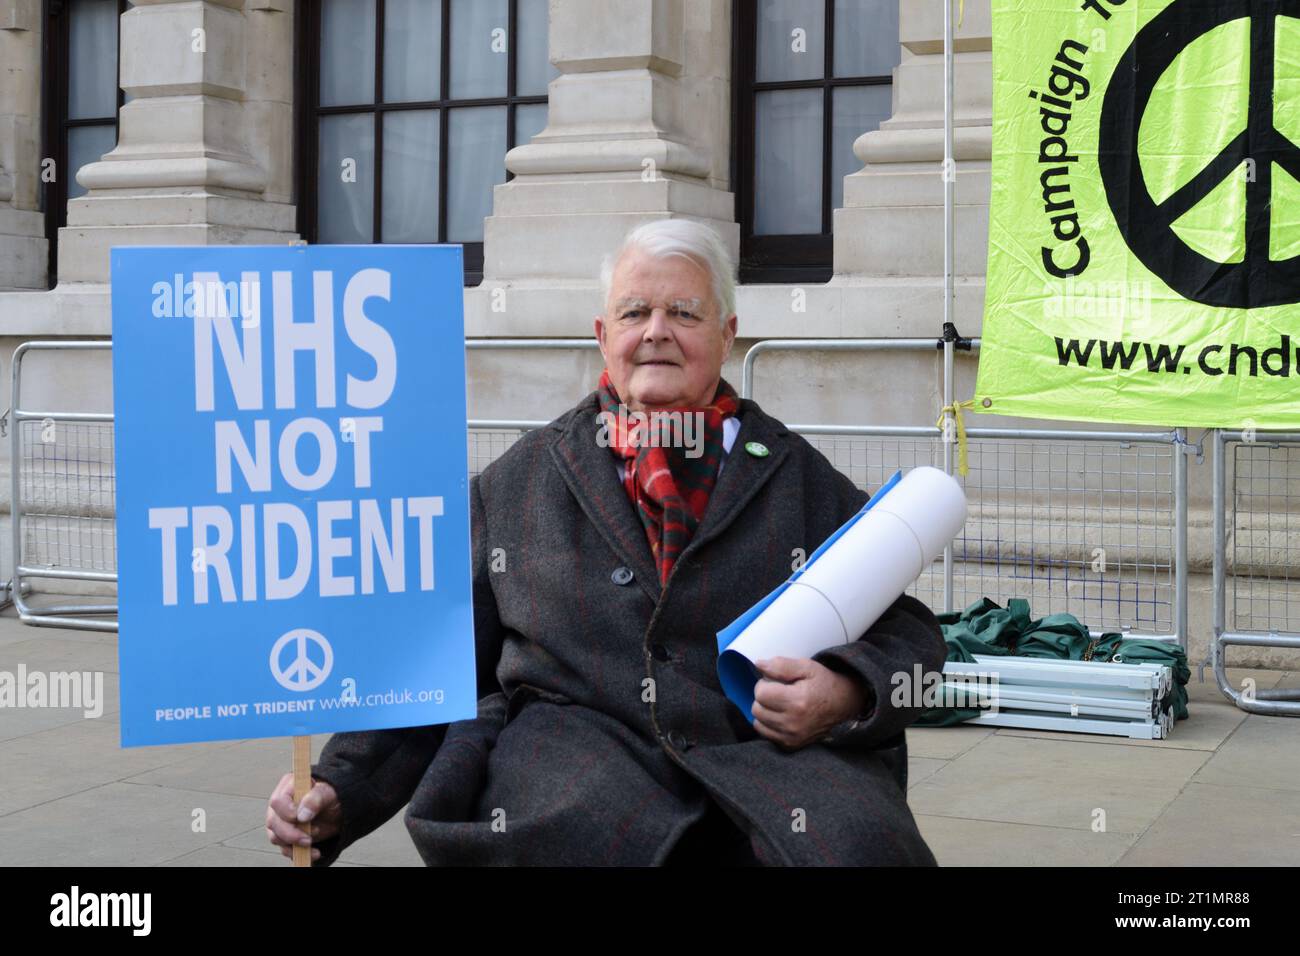 Horse Guards Avenue, Londres, Royaume-Uni - 13 avril 2015 : activiste Bruce Kent et vice-président honoraire du CND assis tenant une pancarte anti Trident. Banque D'Images